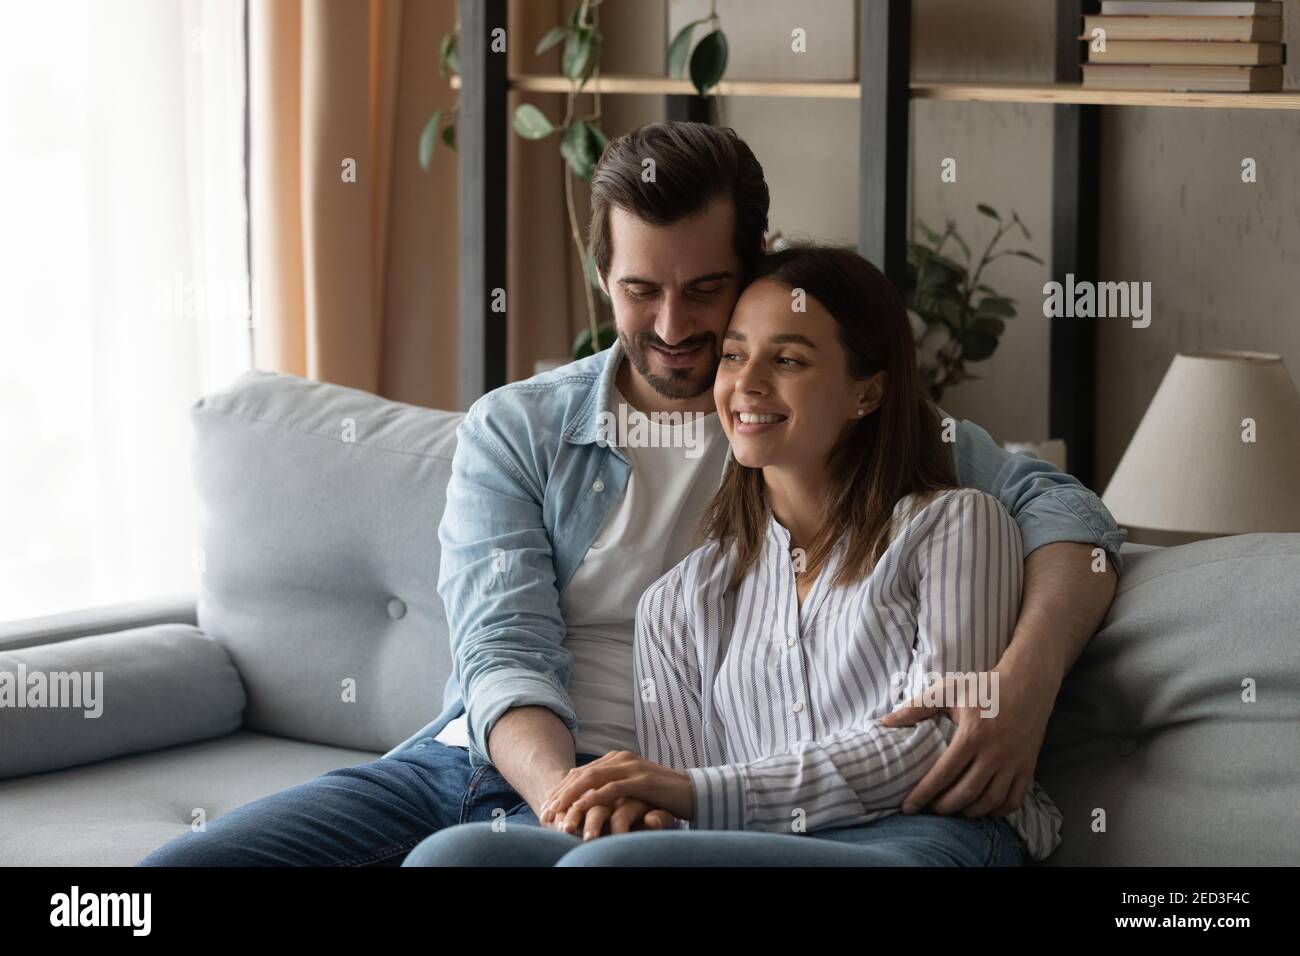 Il giovane marito siede sul divano tenga la moglie amata nelle braccia Foto Stock